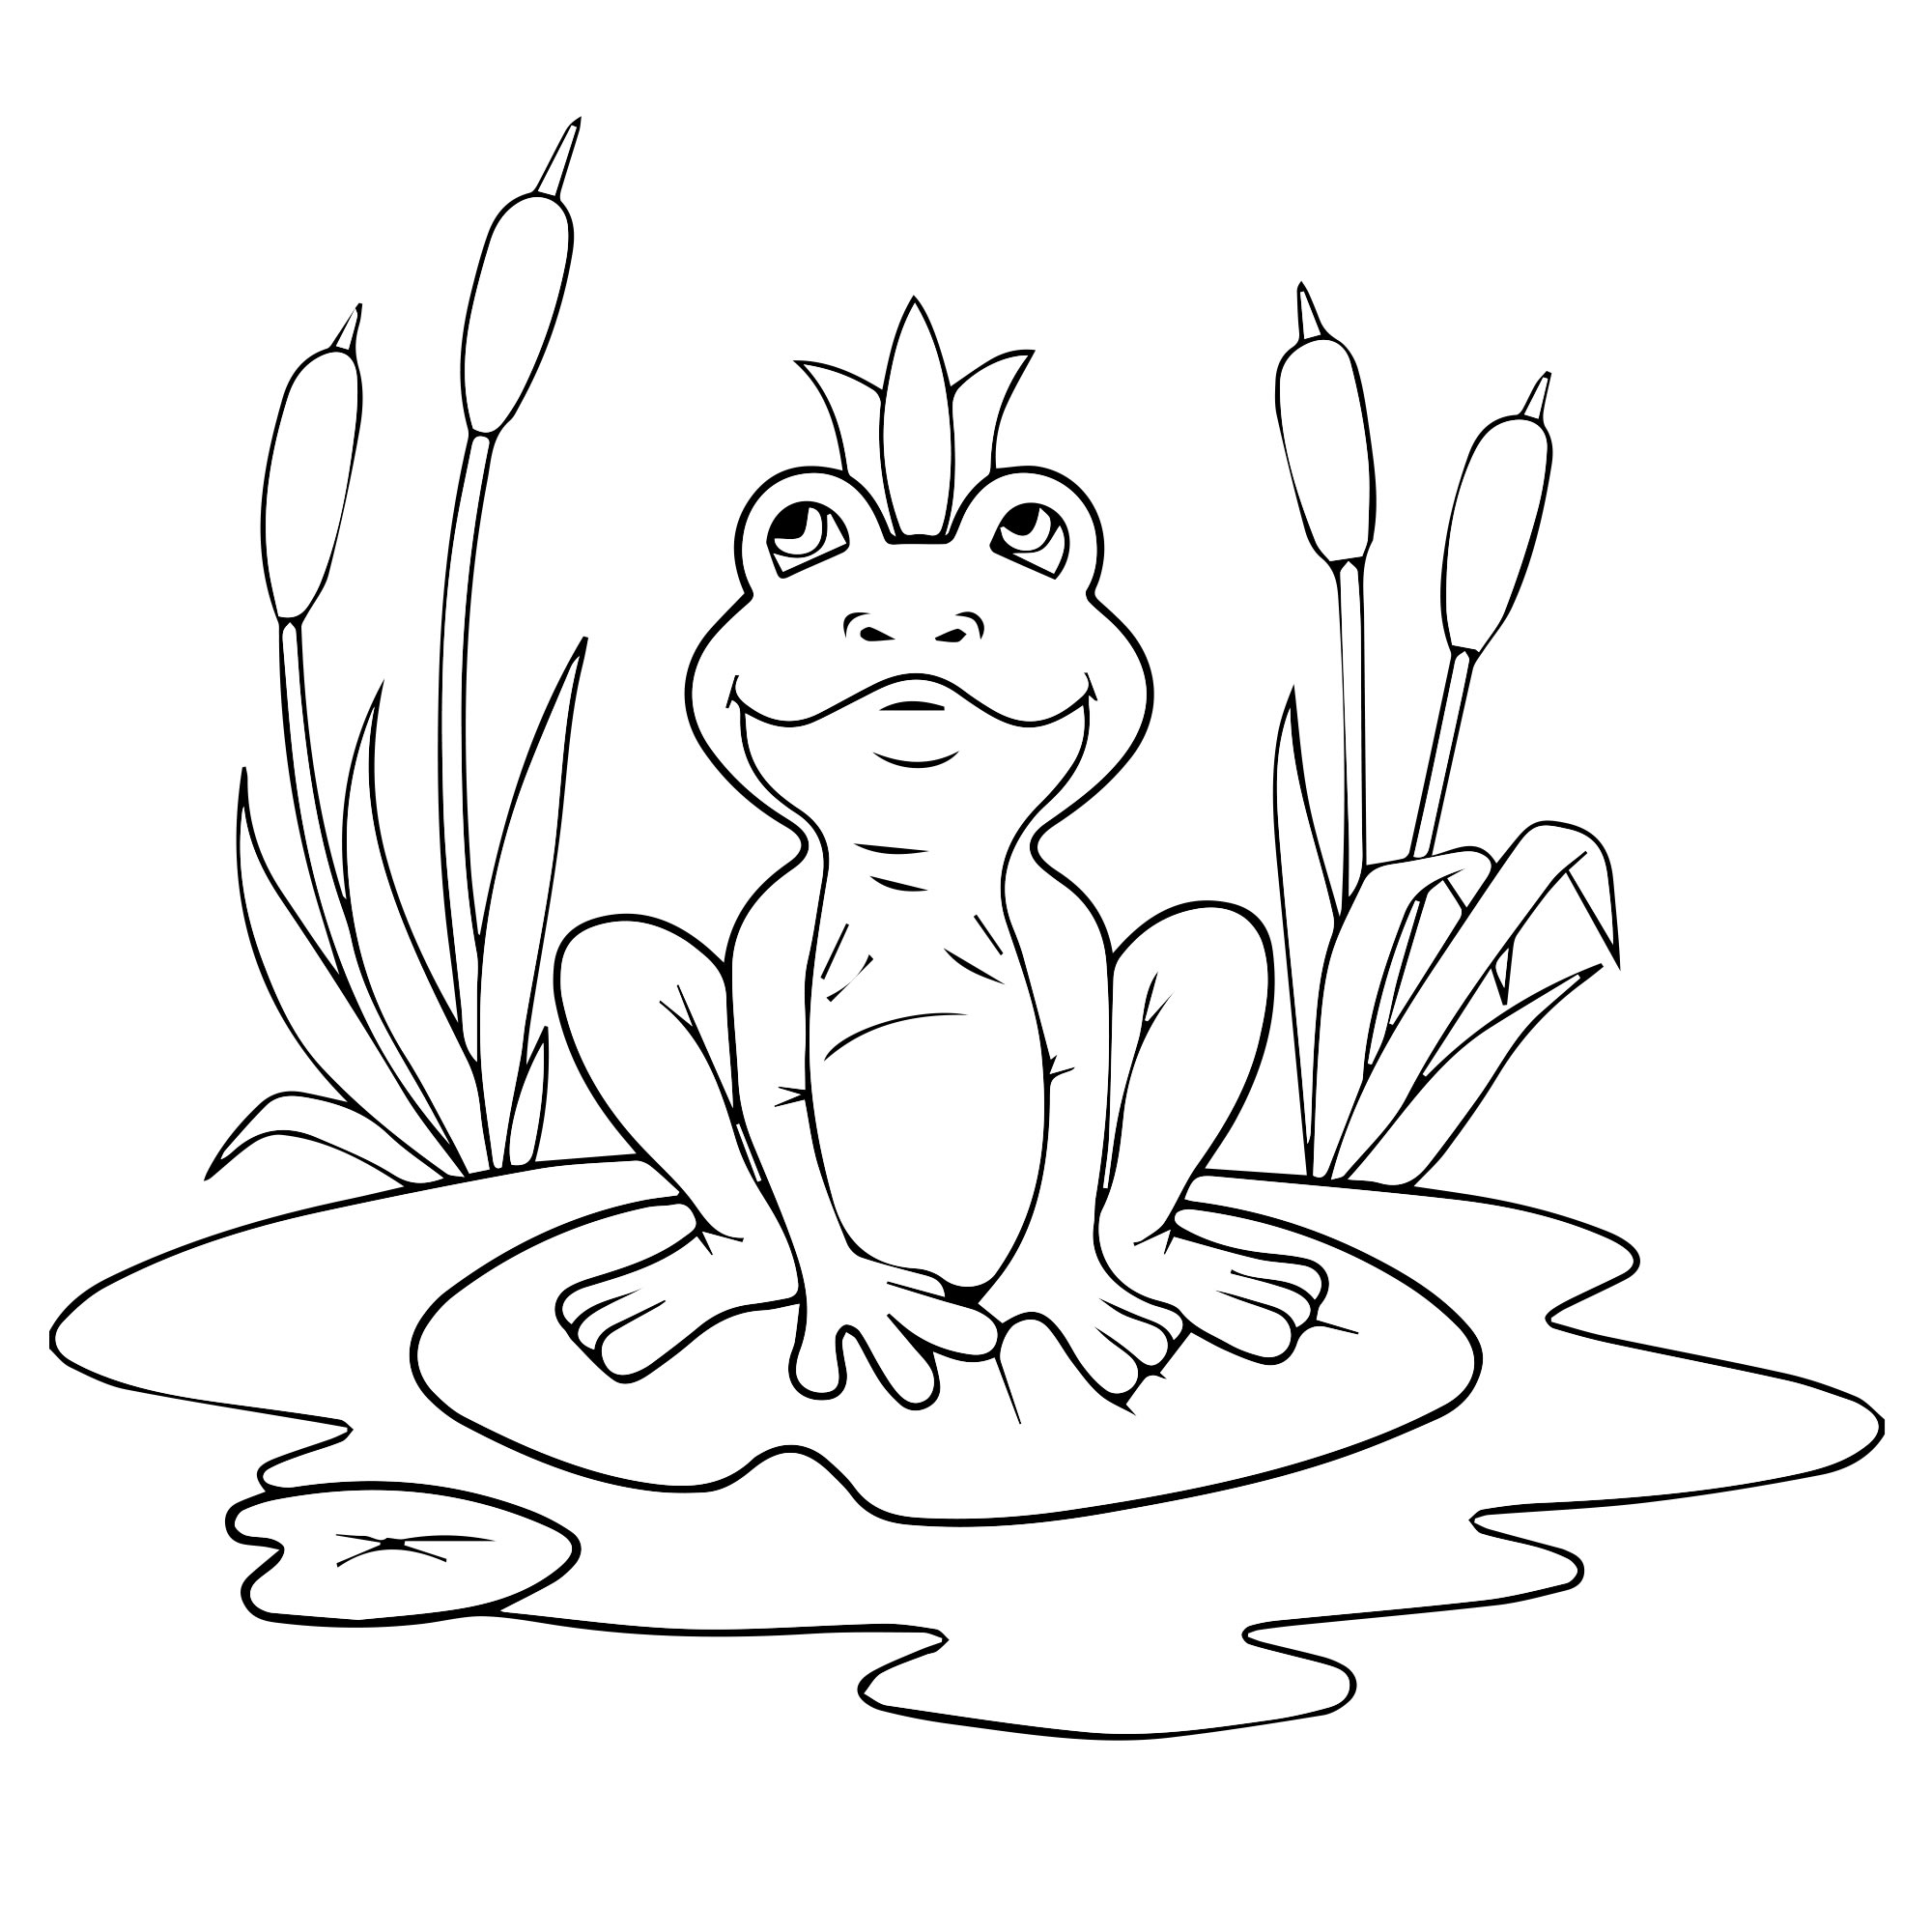 Царевна-лягушка. Картинки, раскраски и задания для детей